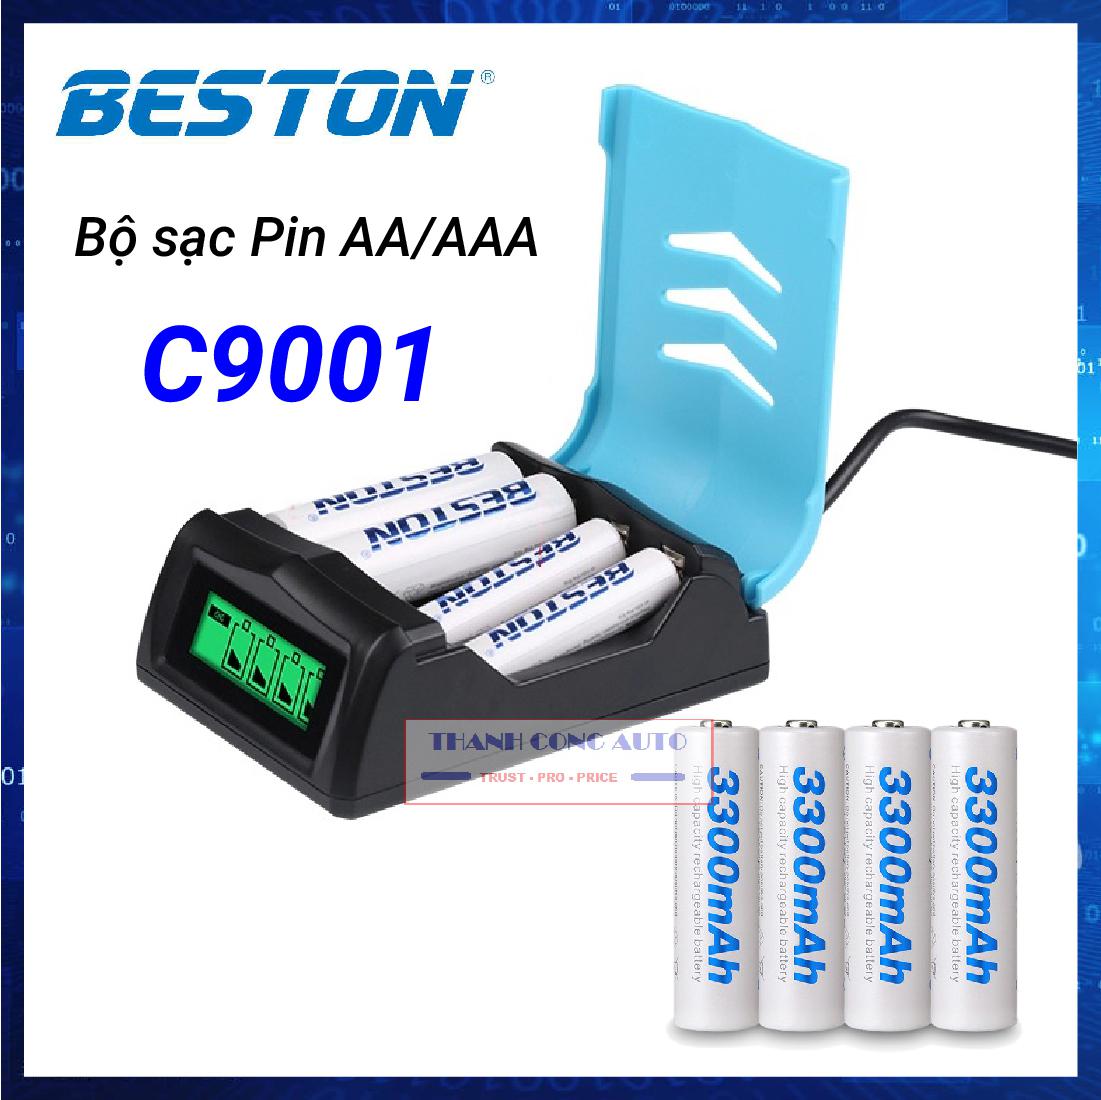 Bộ sạc pin đa năng AA/AAA Beston C9001 sạc nhanh có màn LCD